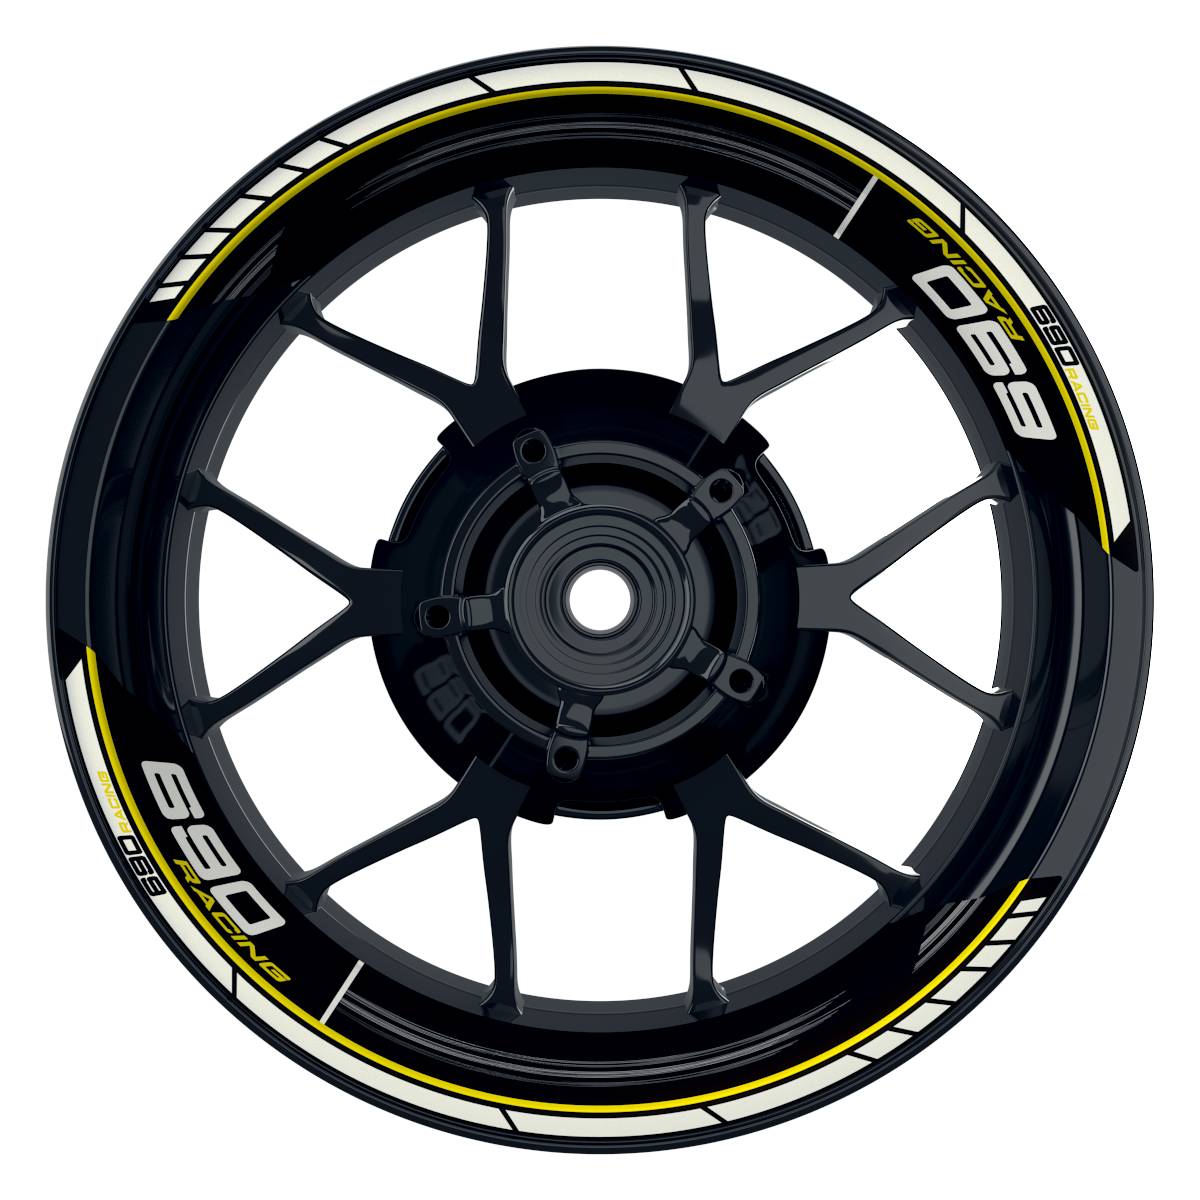 KTM Racing 690 Scratched schwarz gelb Frontansicht